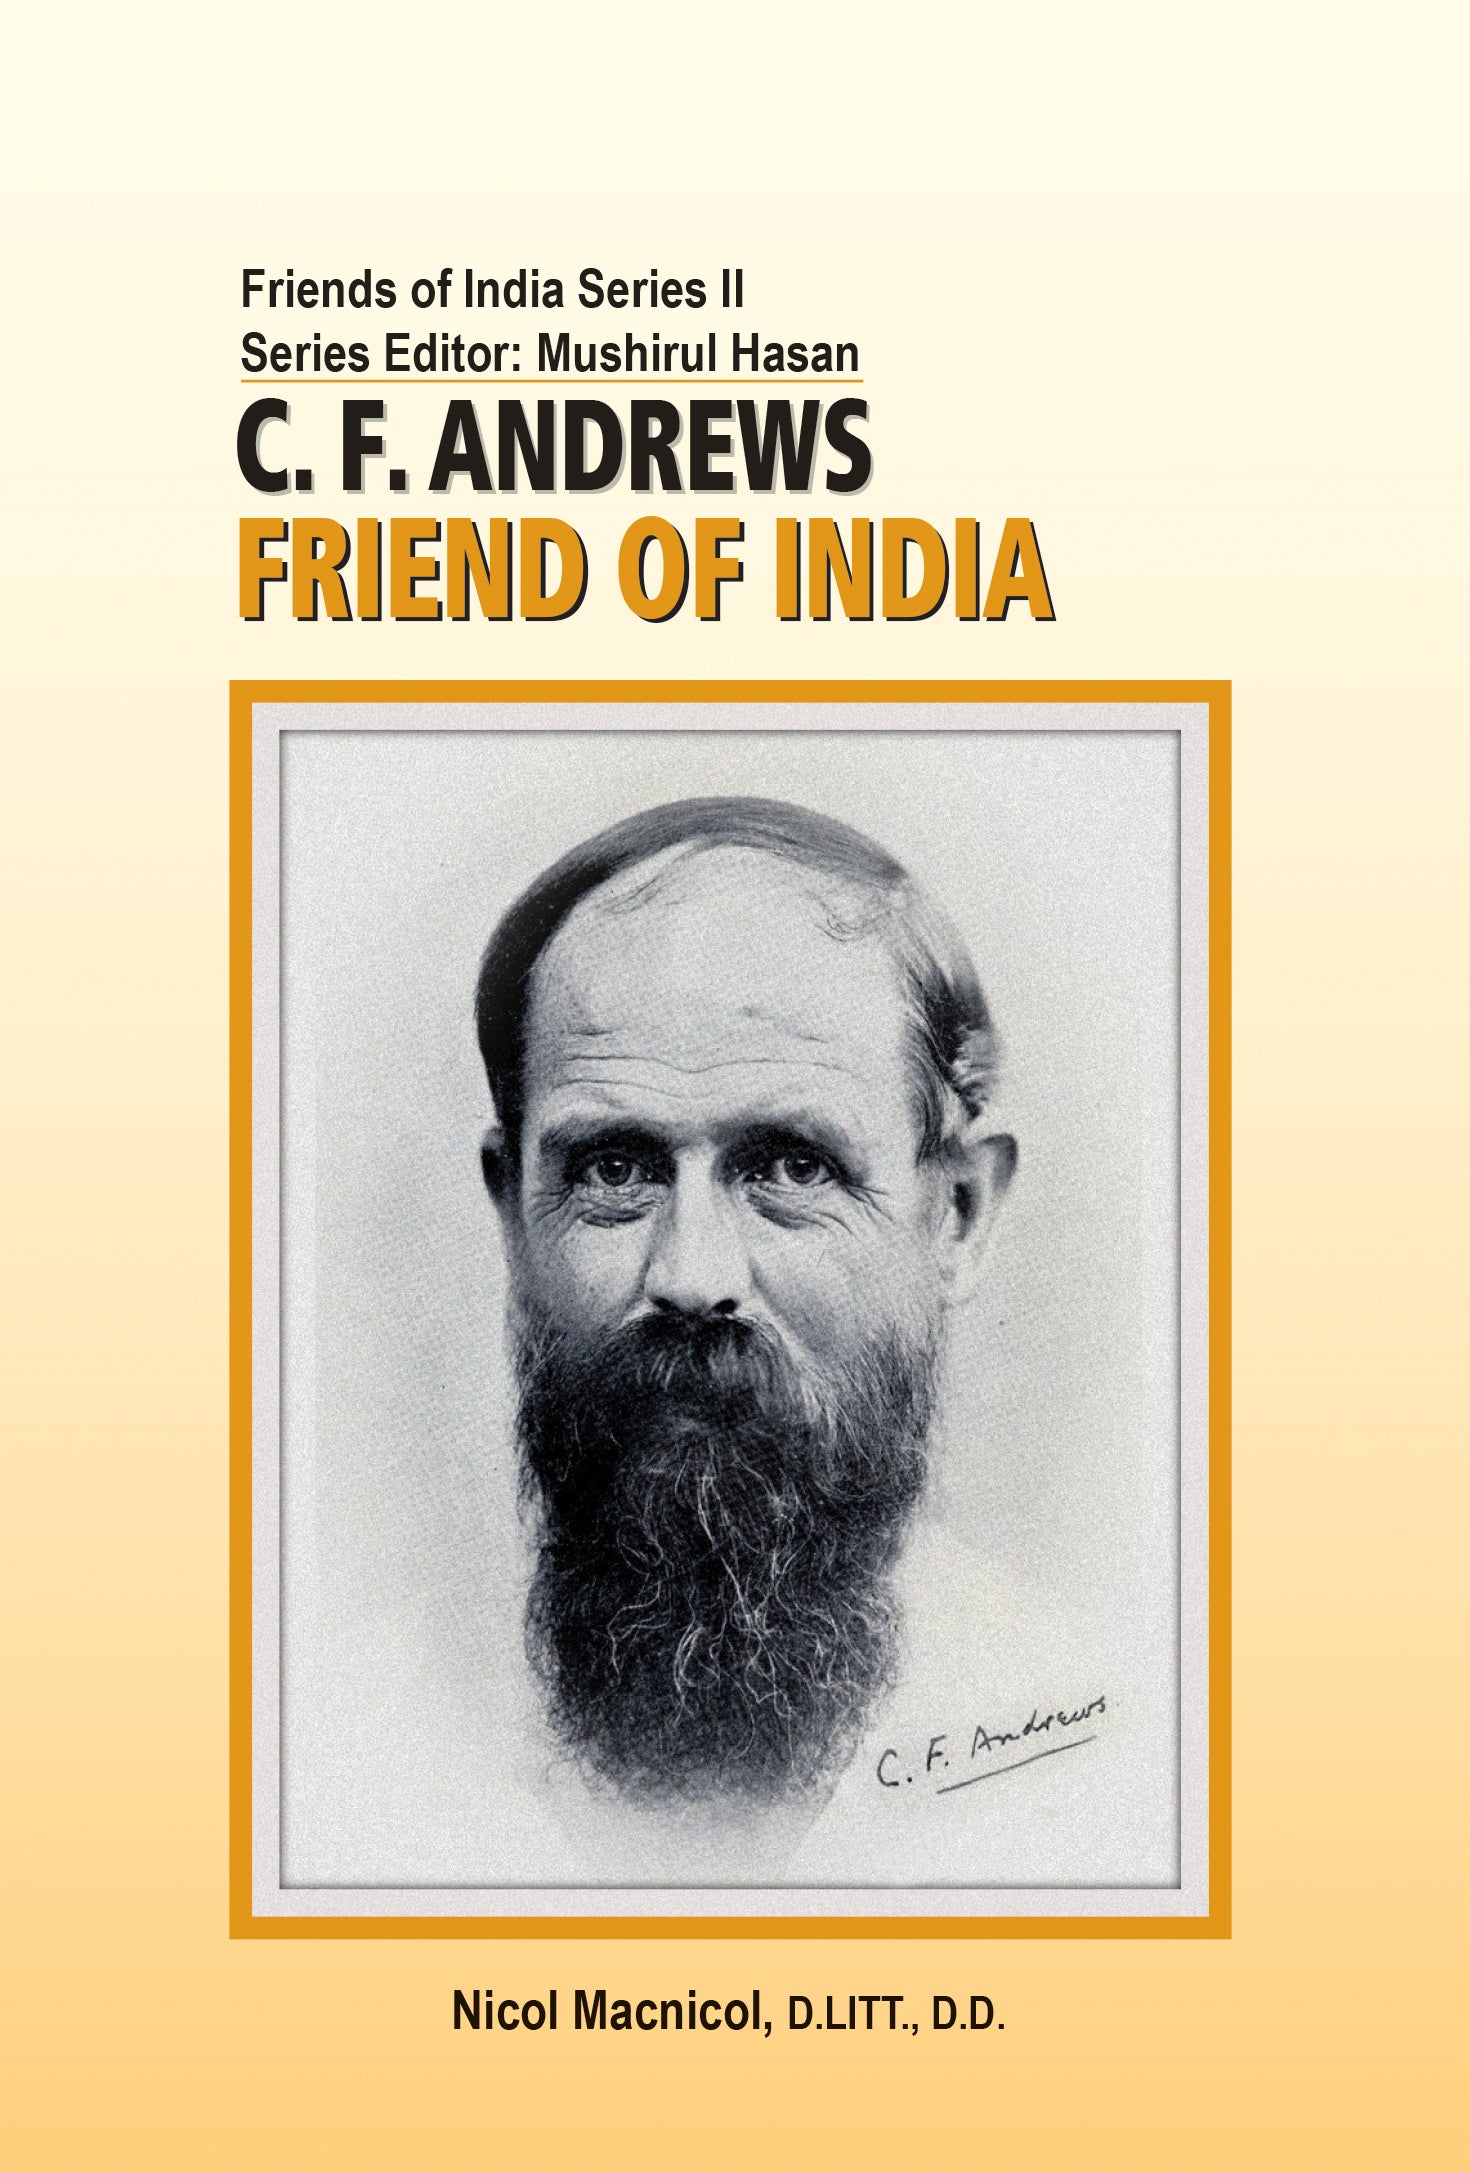 C.F. Andrews: Friend of India